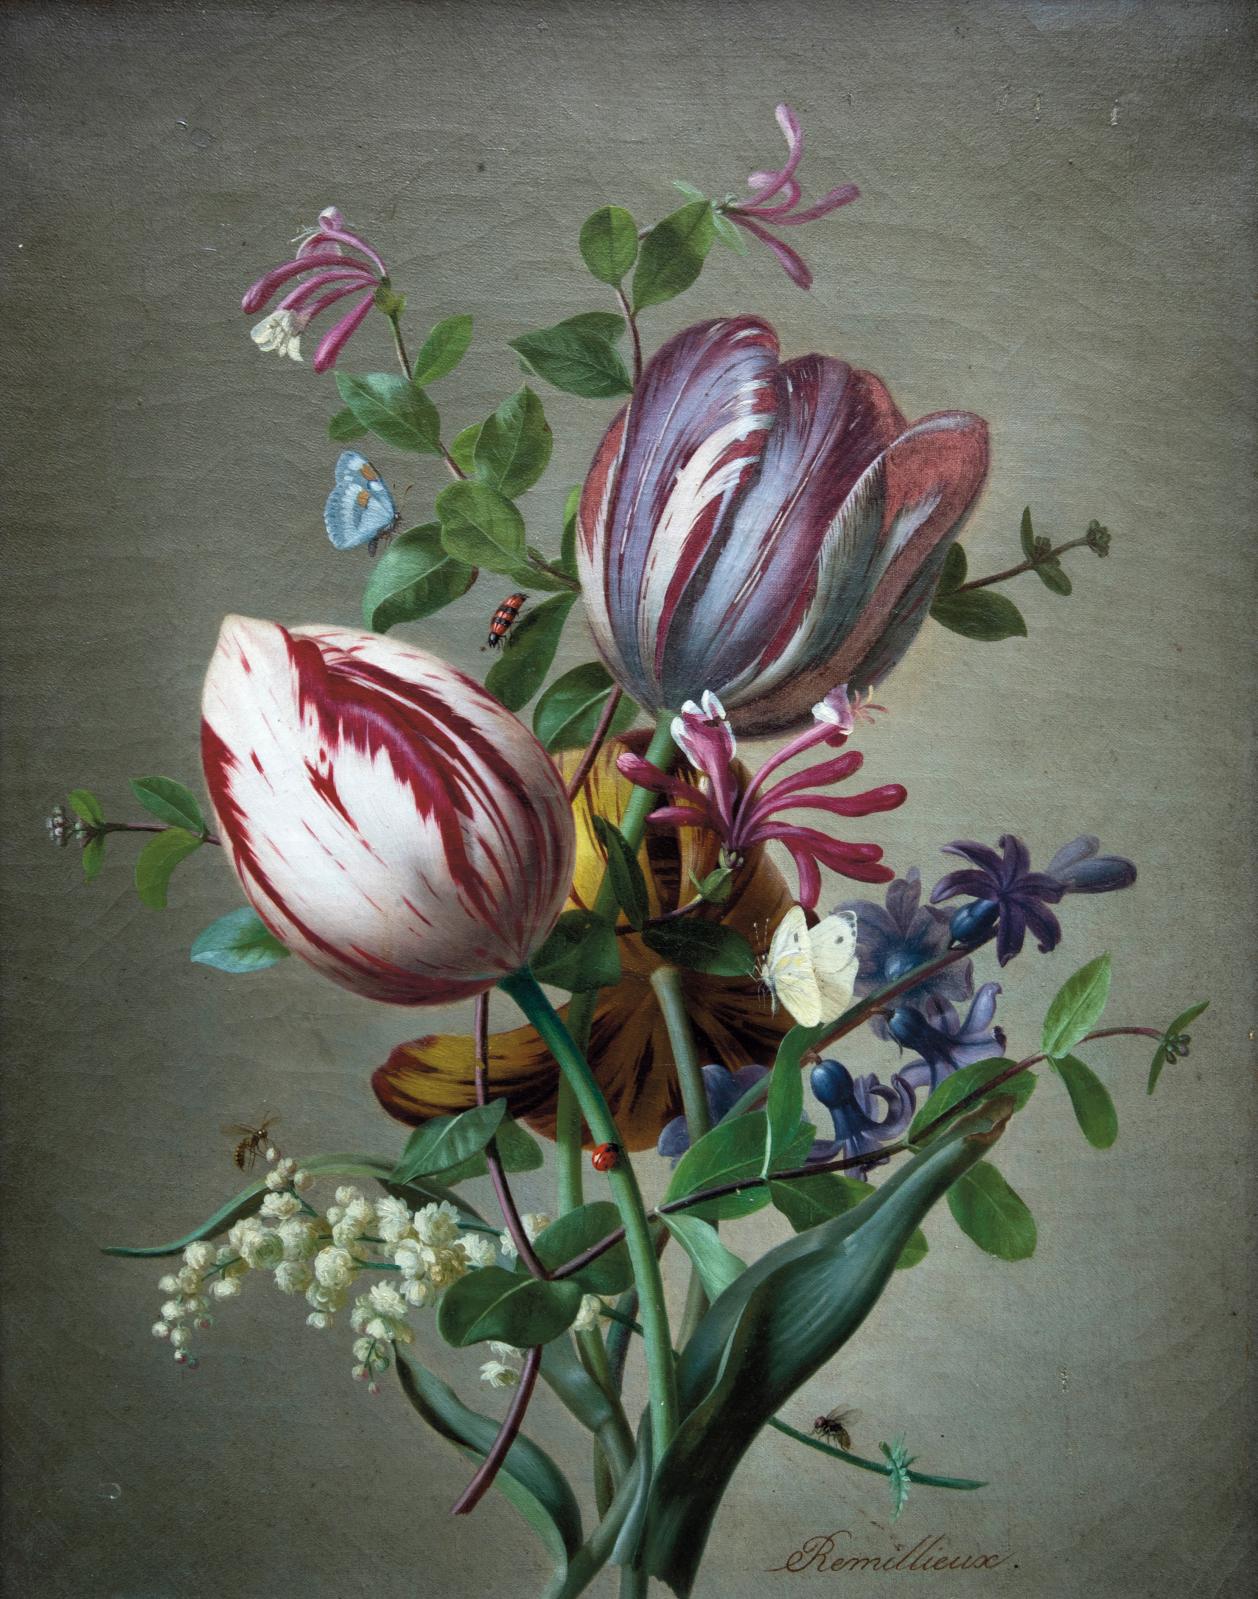 A Record for Rémillieux's Bouquet